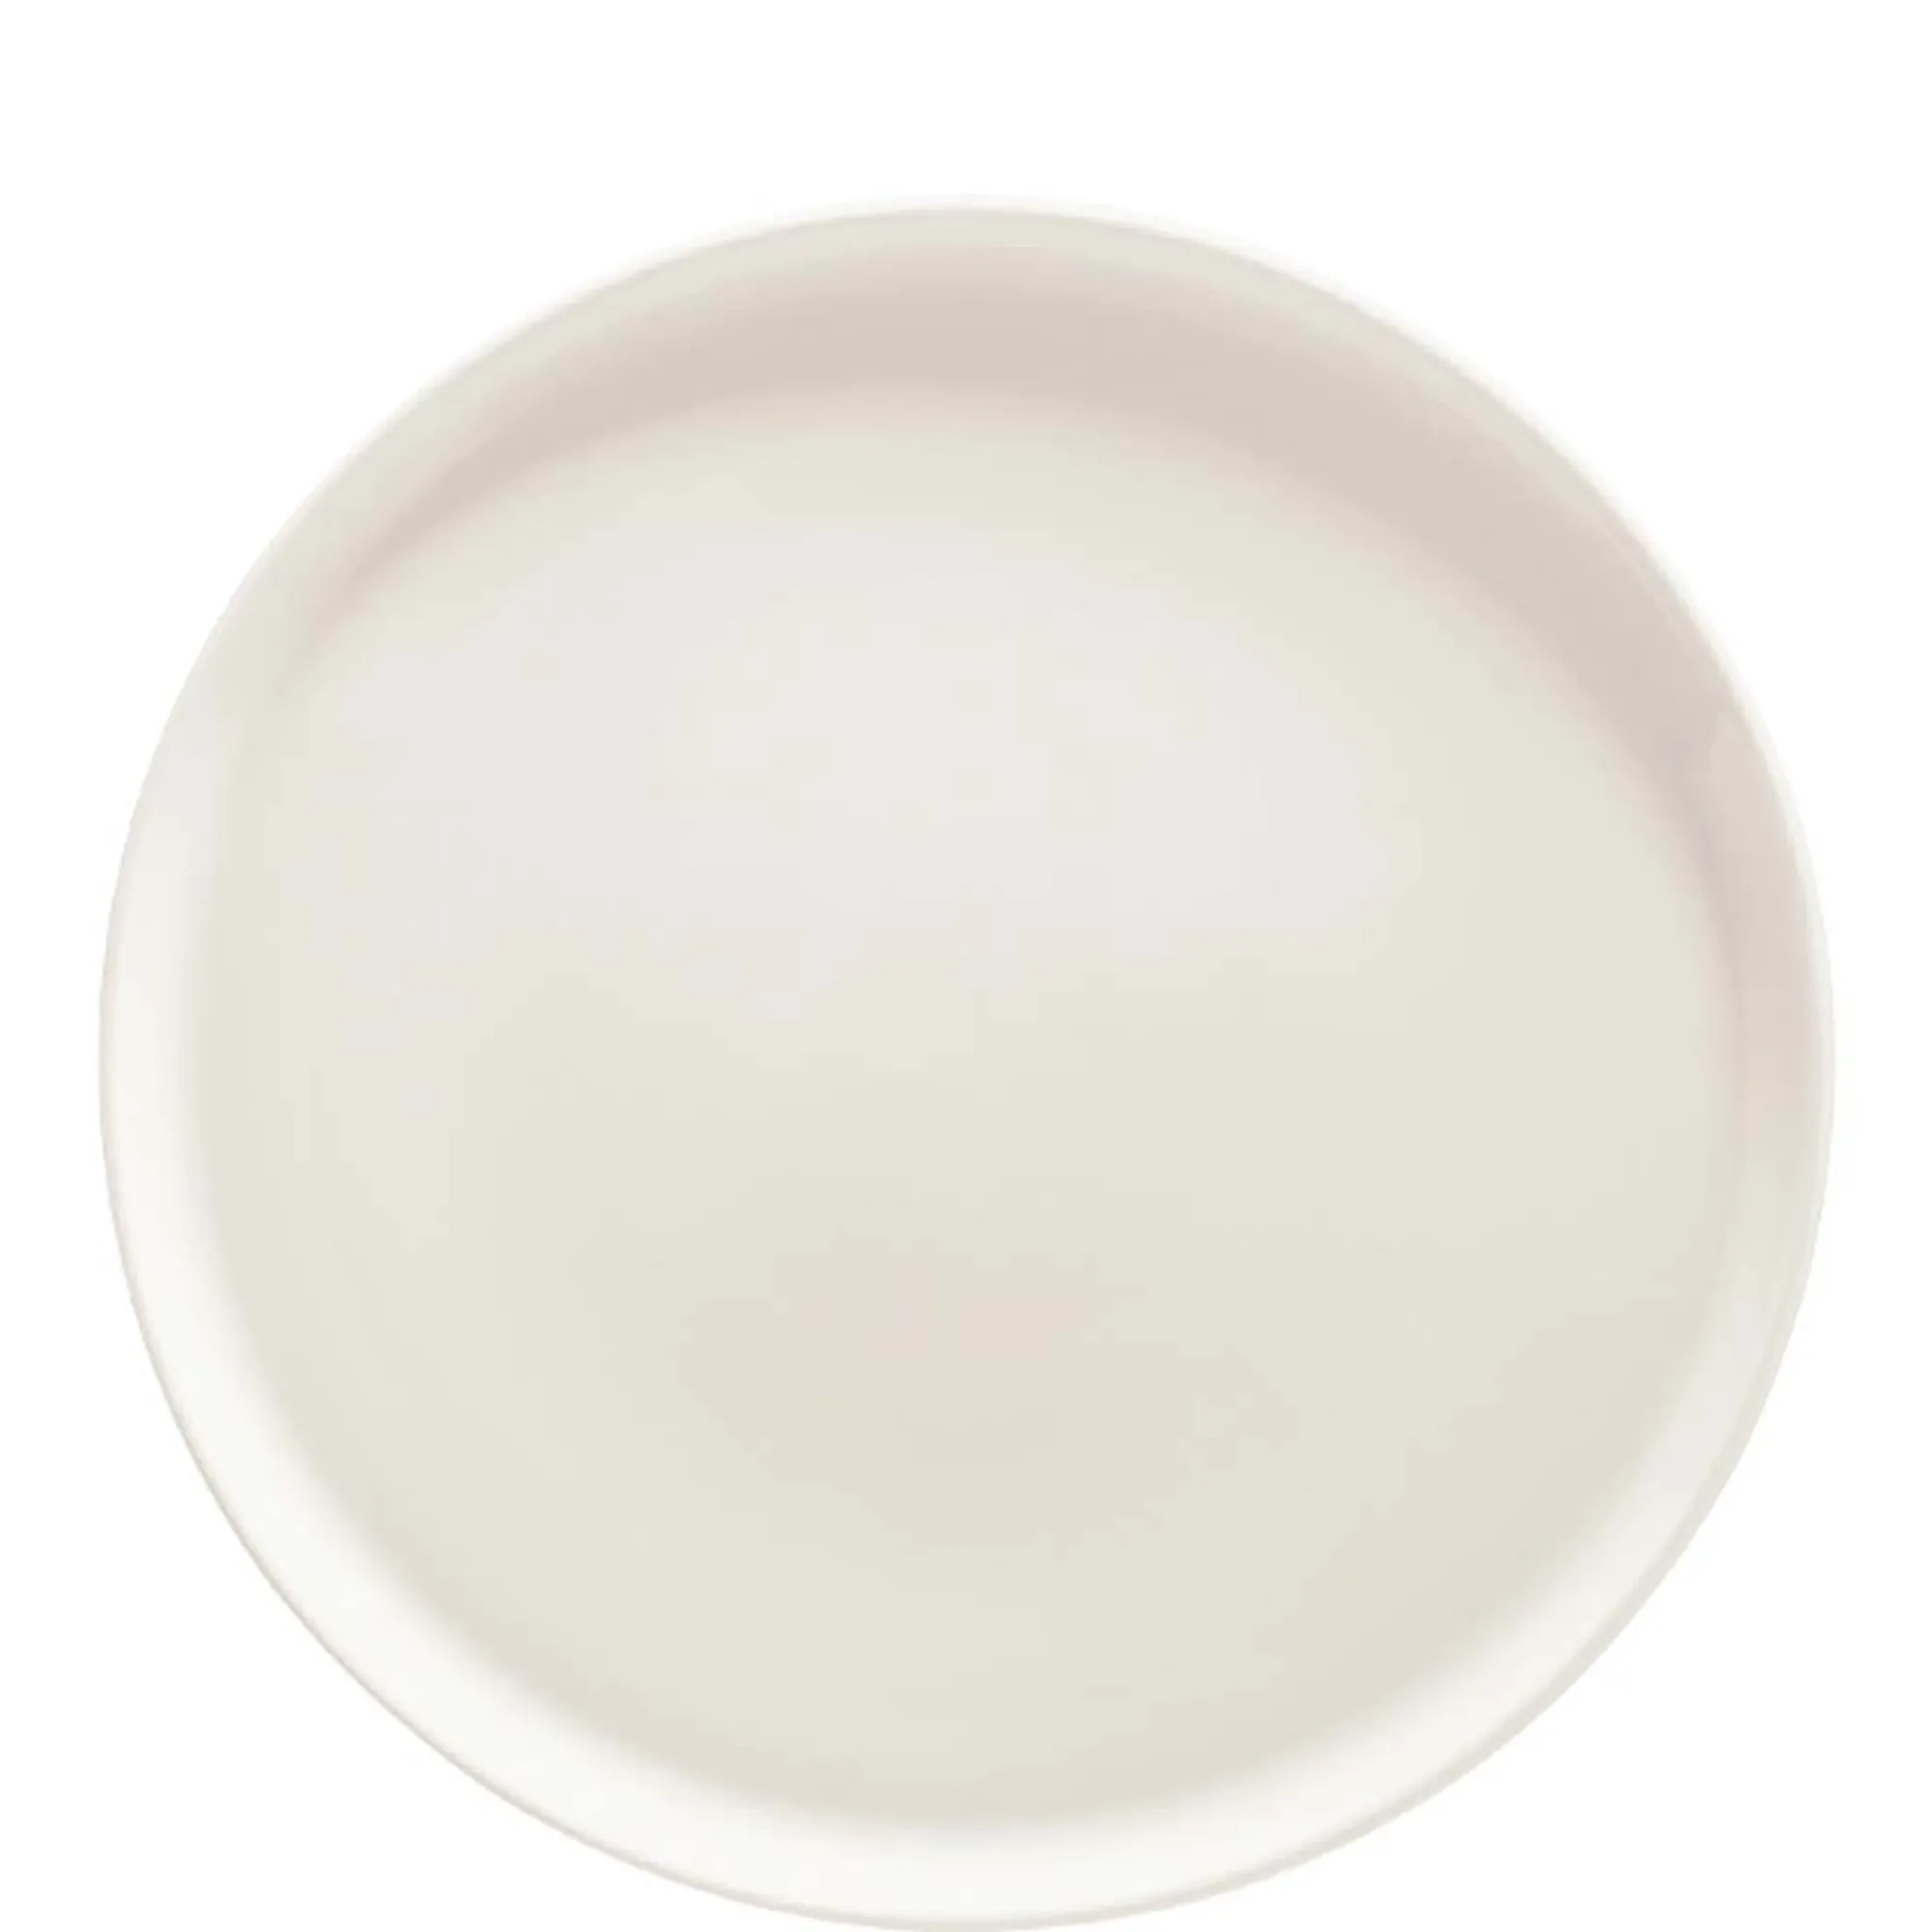 Premium Cream Porzellan, 32.5cm, 32cm, Pizzateller, Stück creme-weiß, Premium Bonna 1 Porcelain